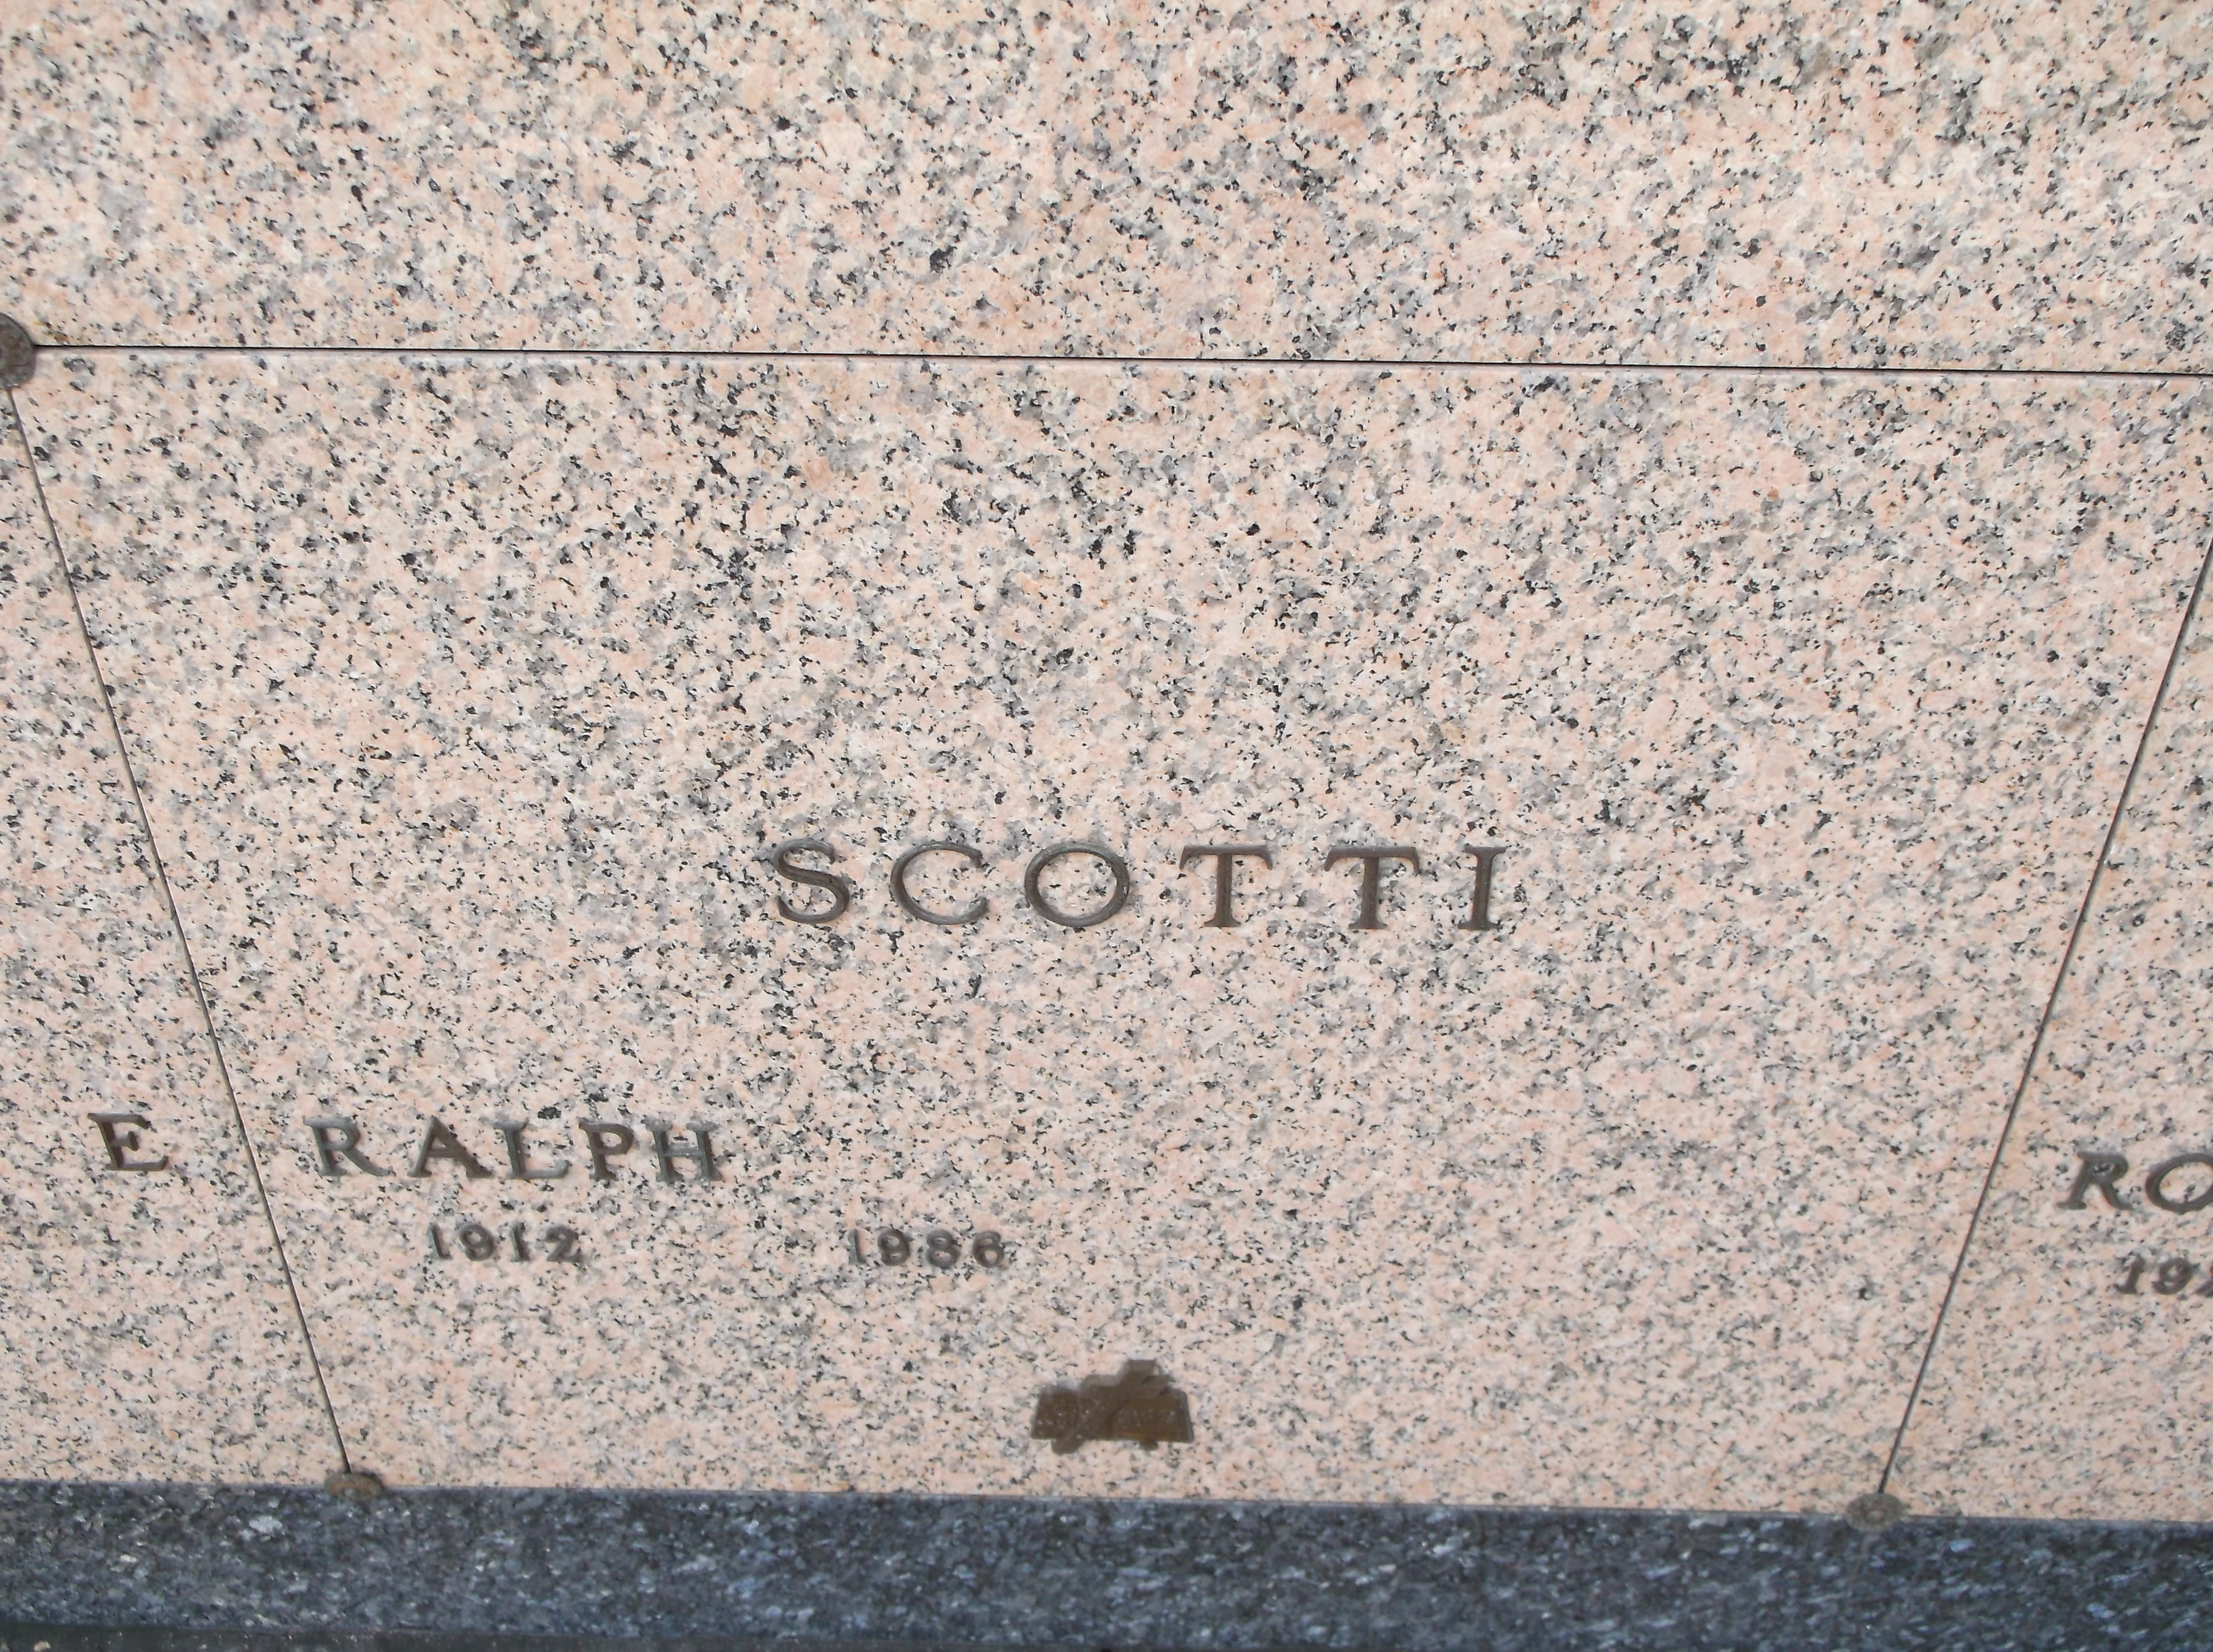 Ralph Scotti